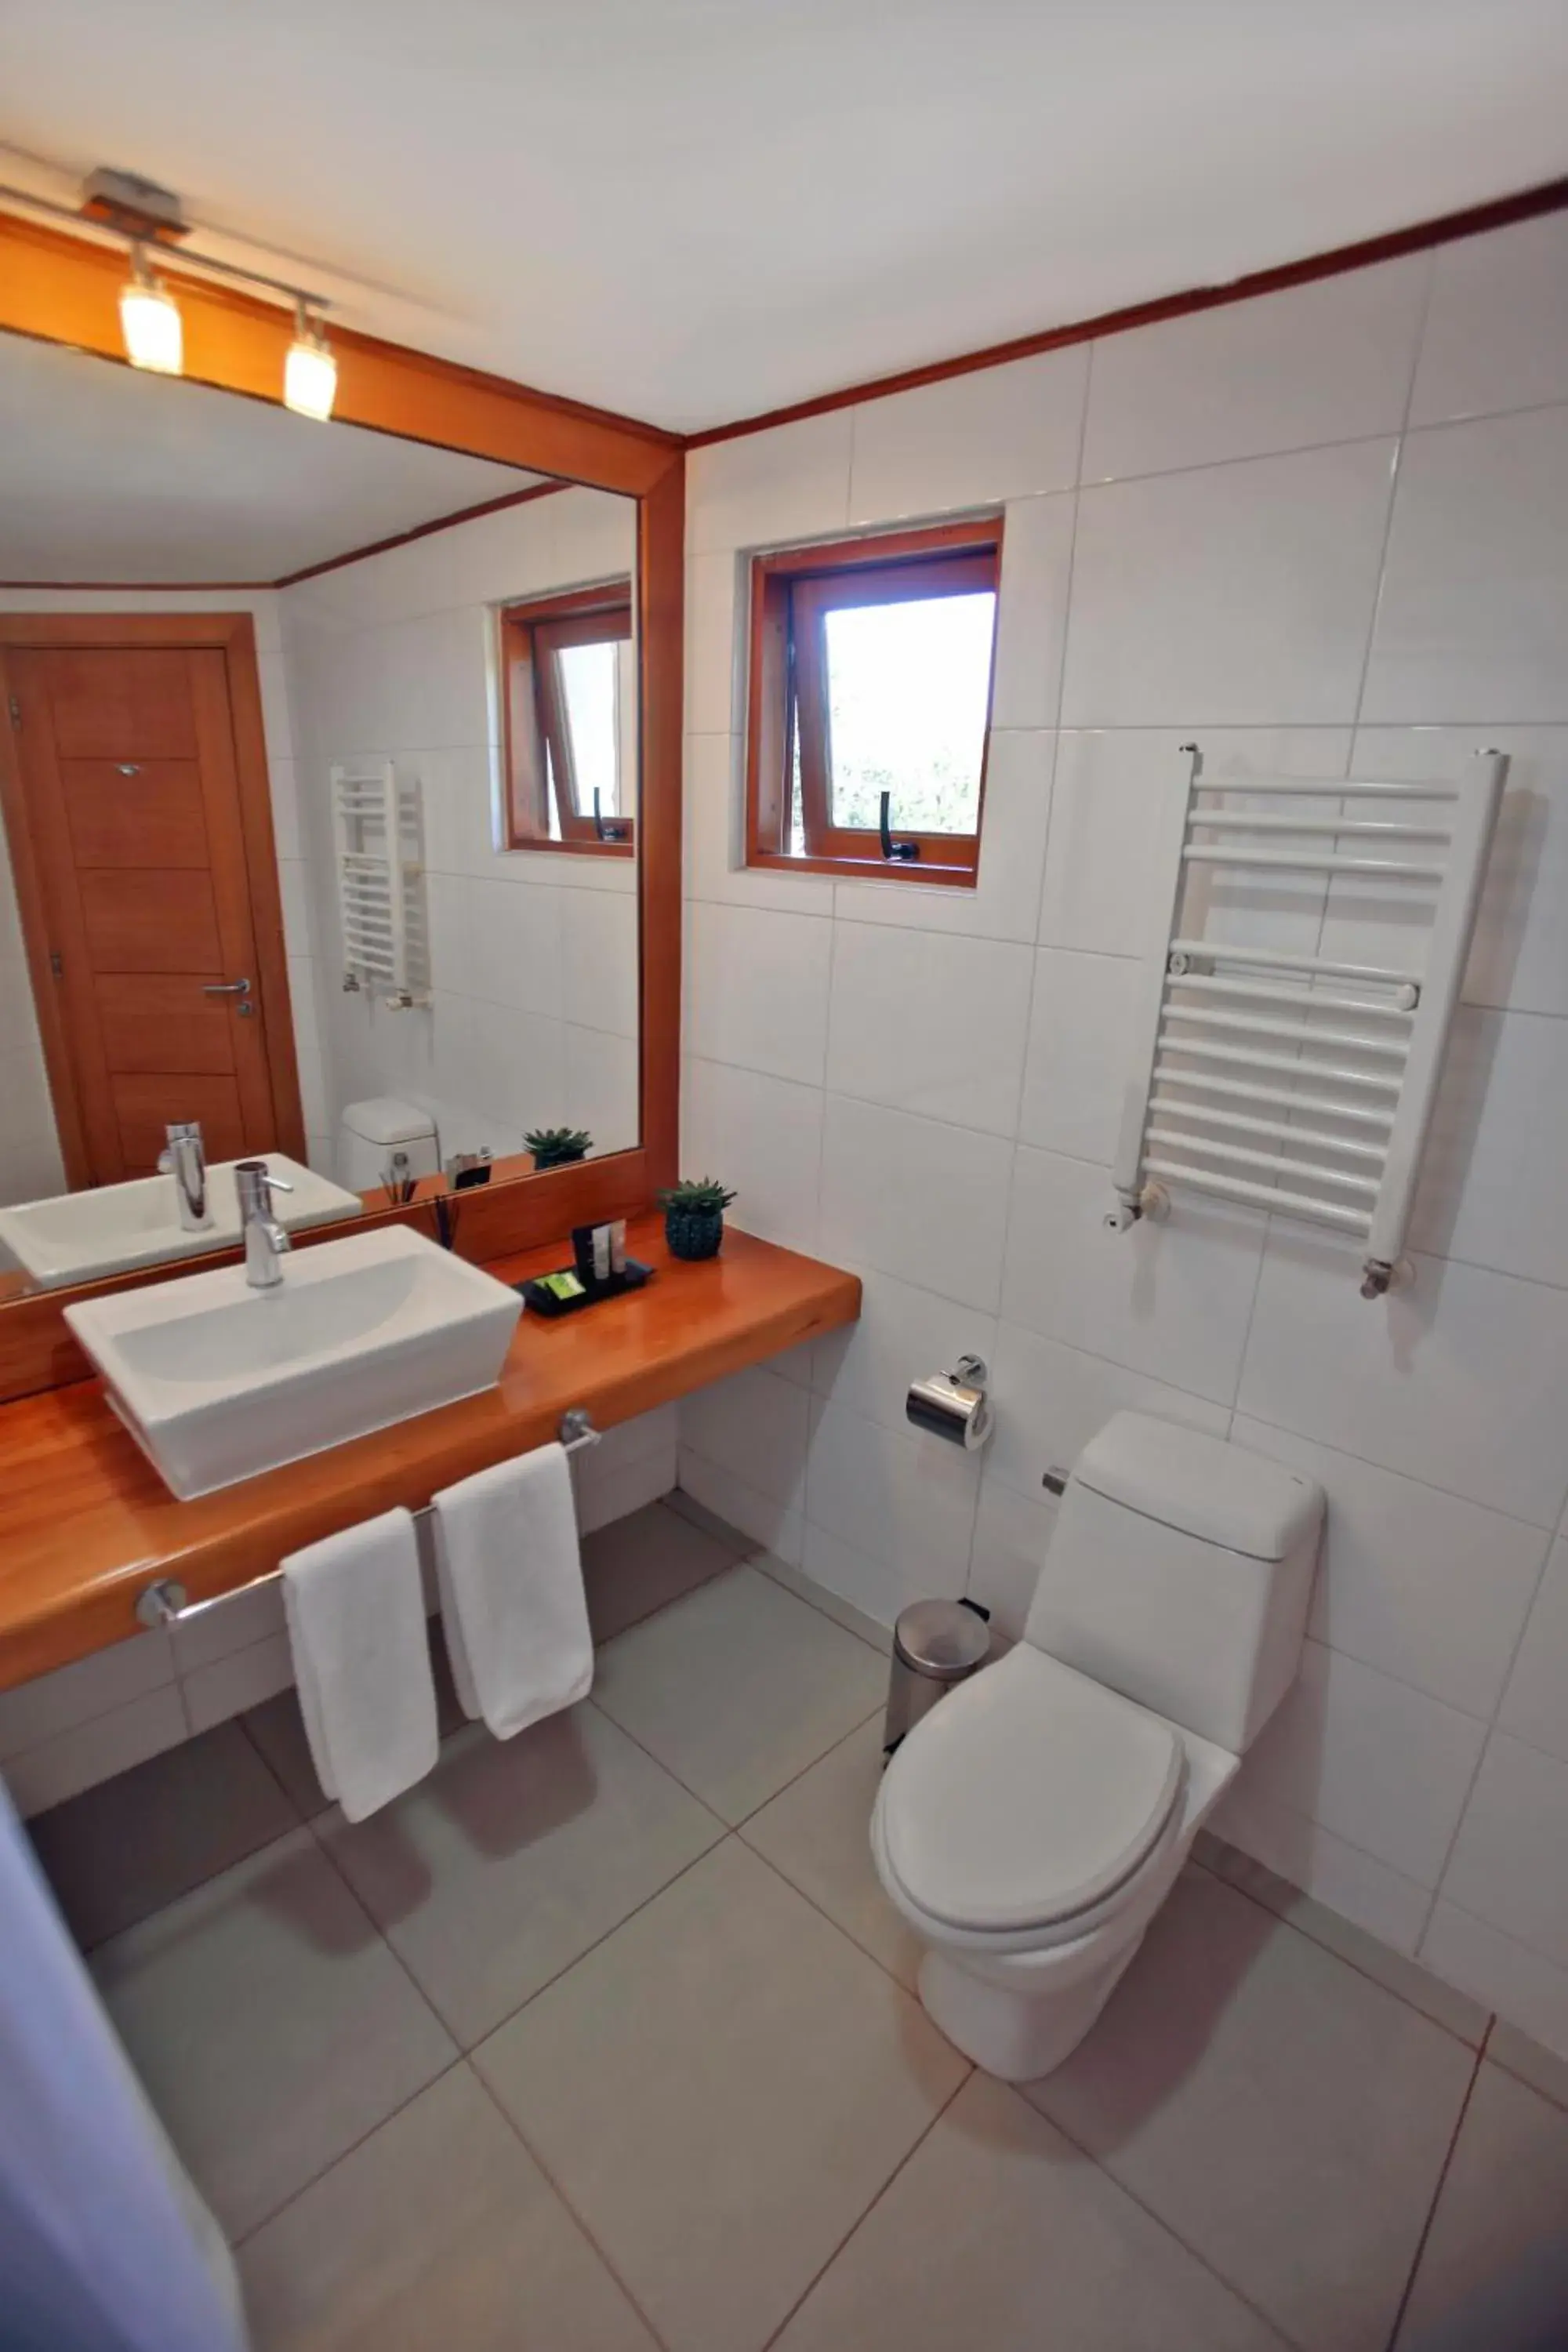 Bathroom in Hotel Puelche